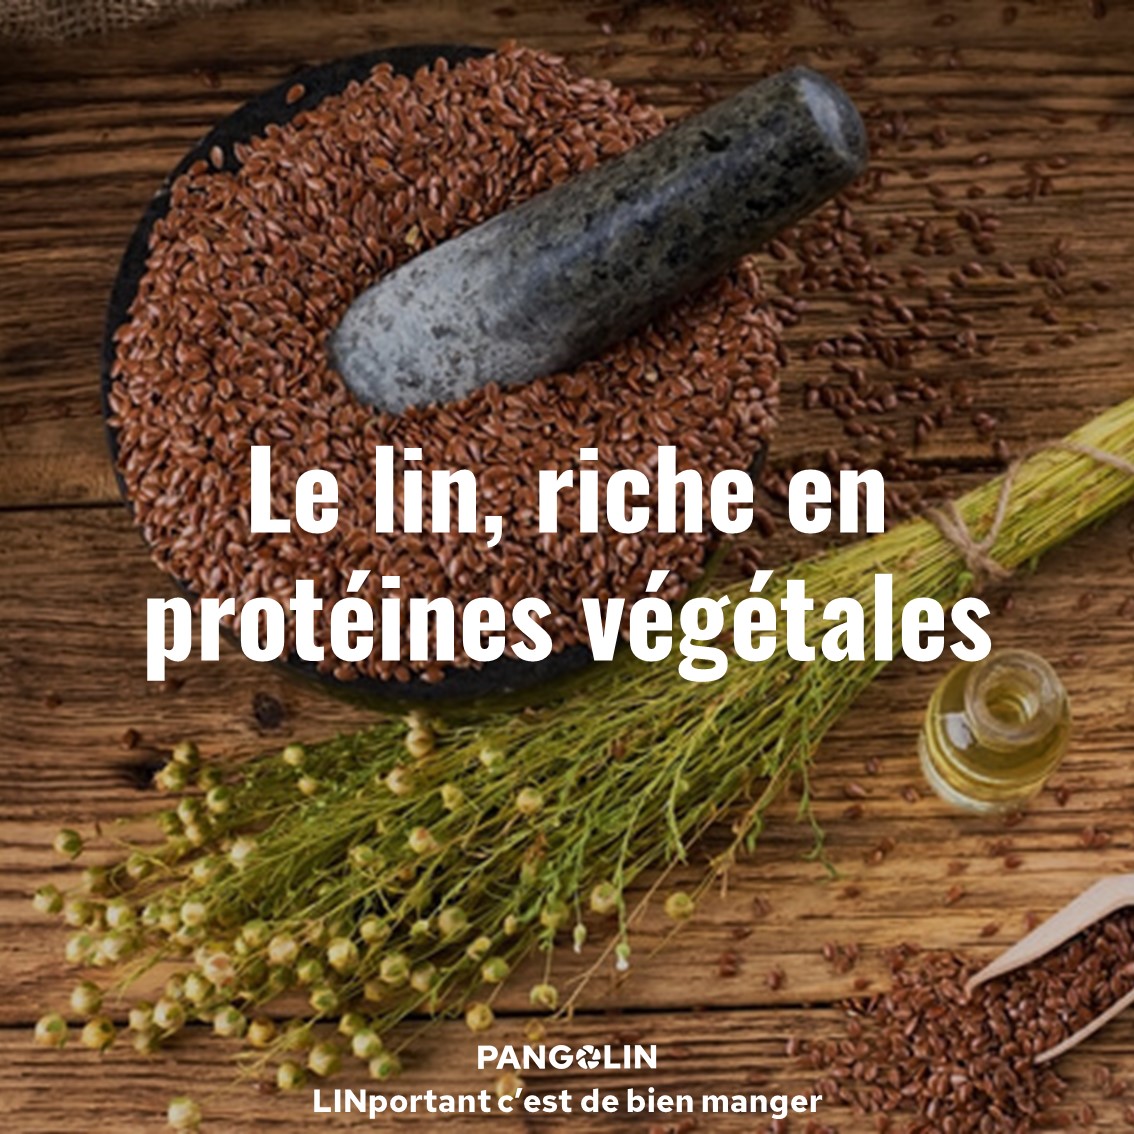 Le lin riche en protéines végétales